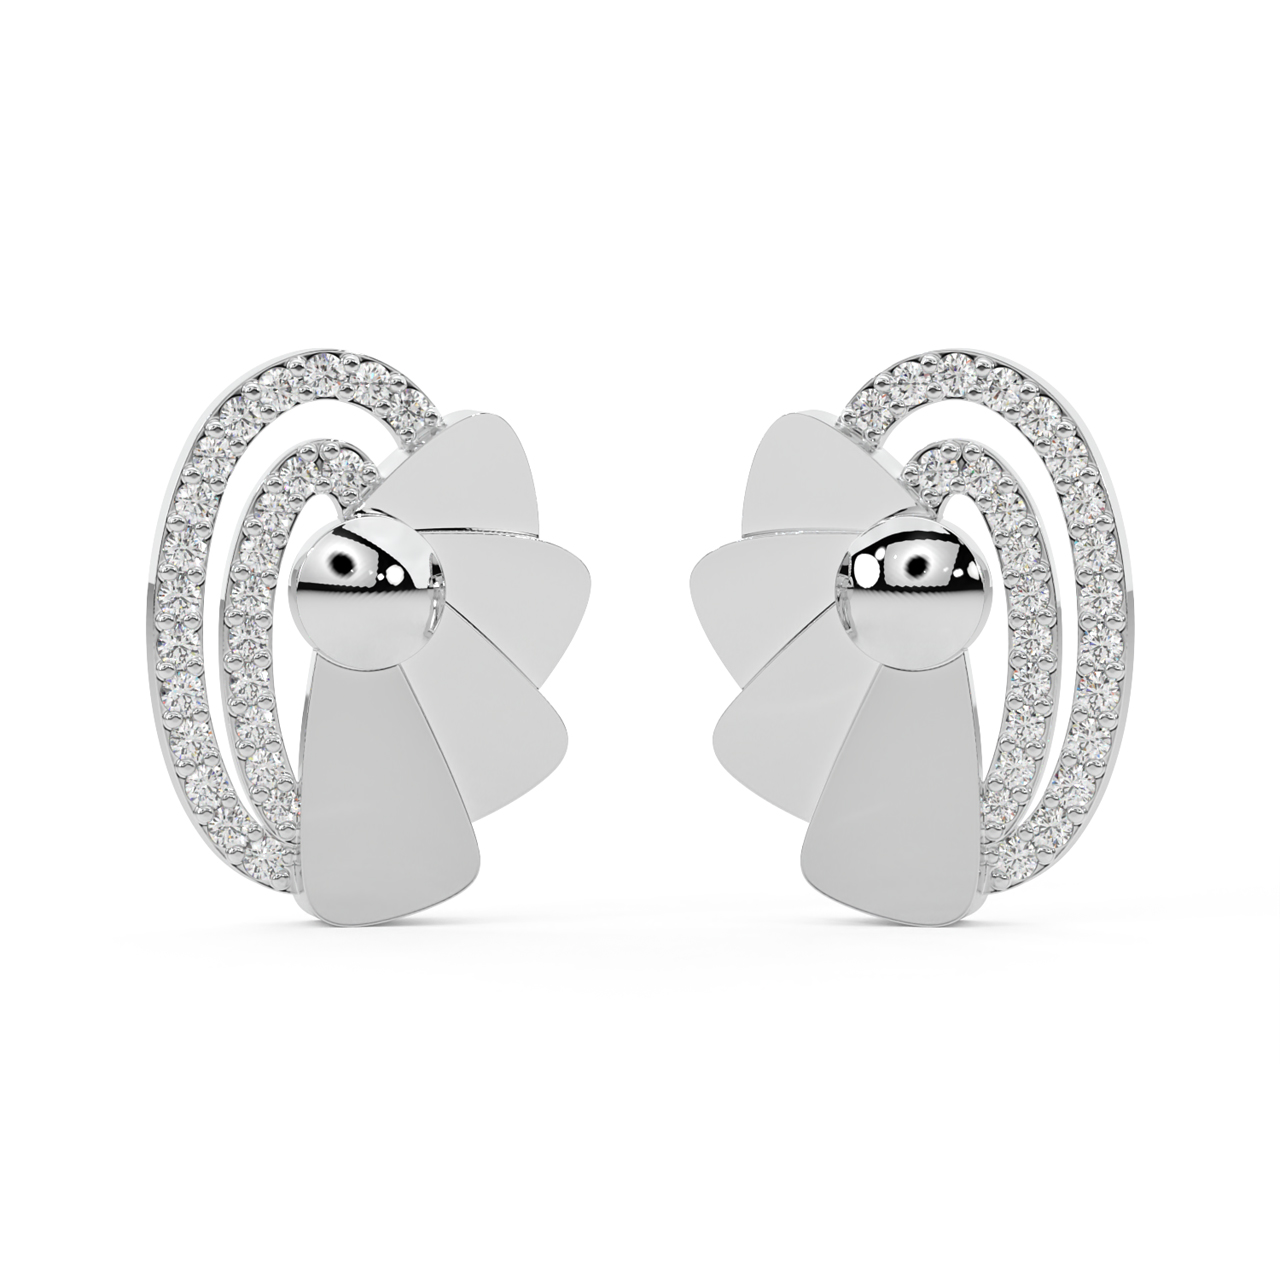 Oval Design Diamond Stud Earrings